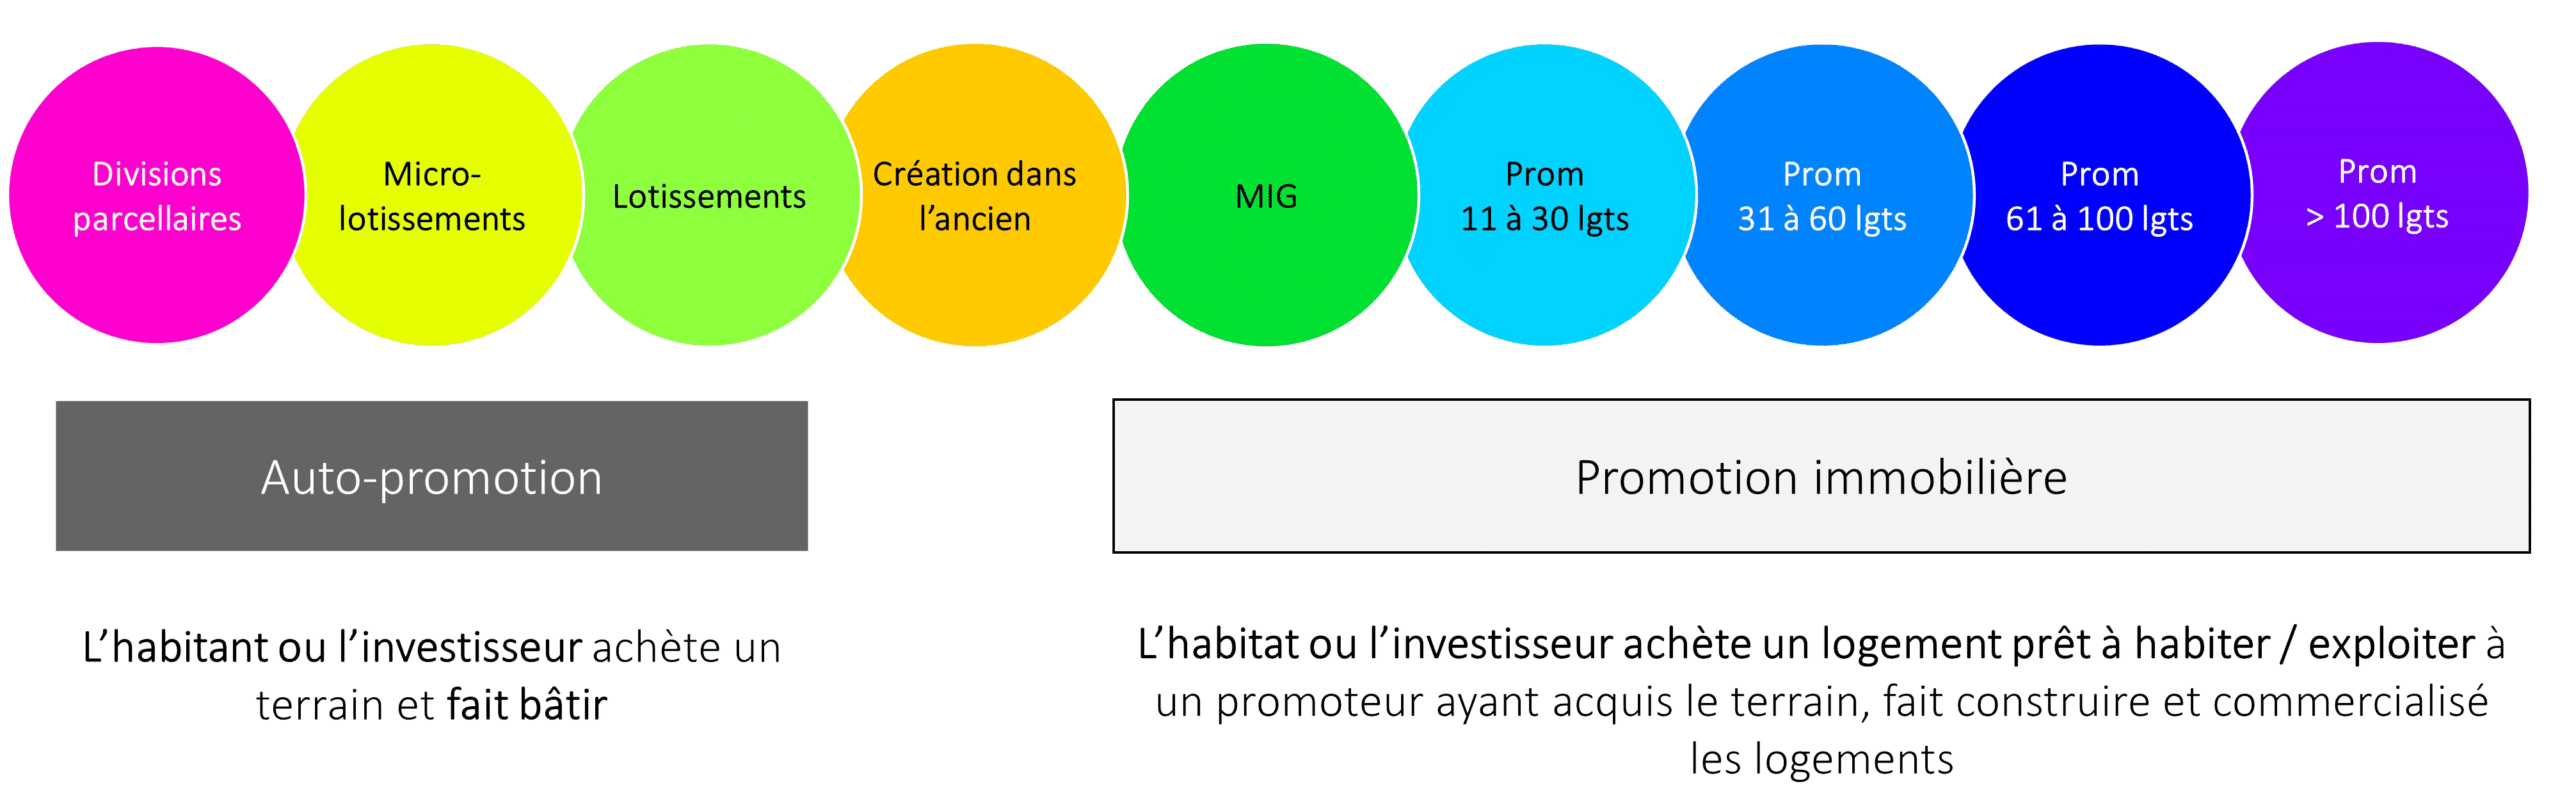 schéma des différentes filières de production de logement en France: de l'auto-promotion à la promotion immobilière